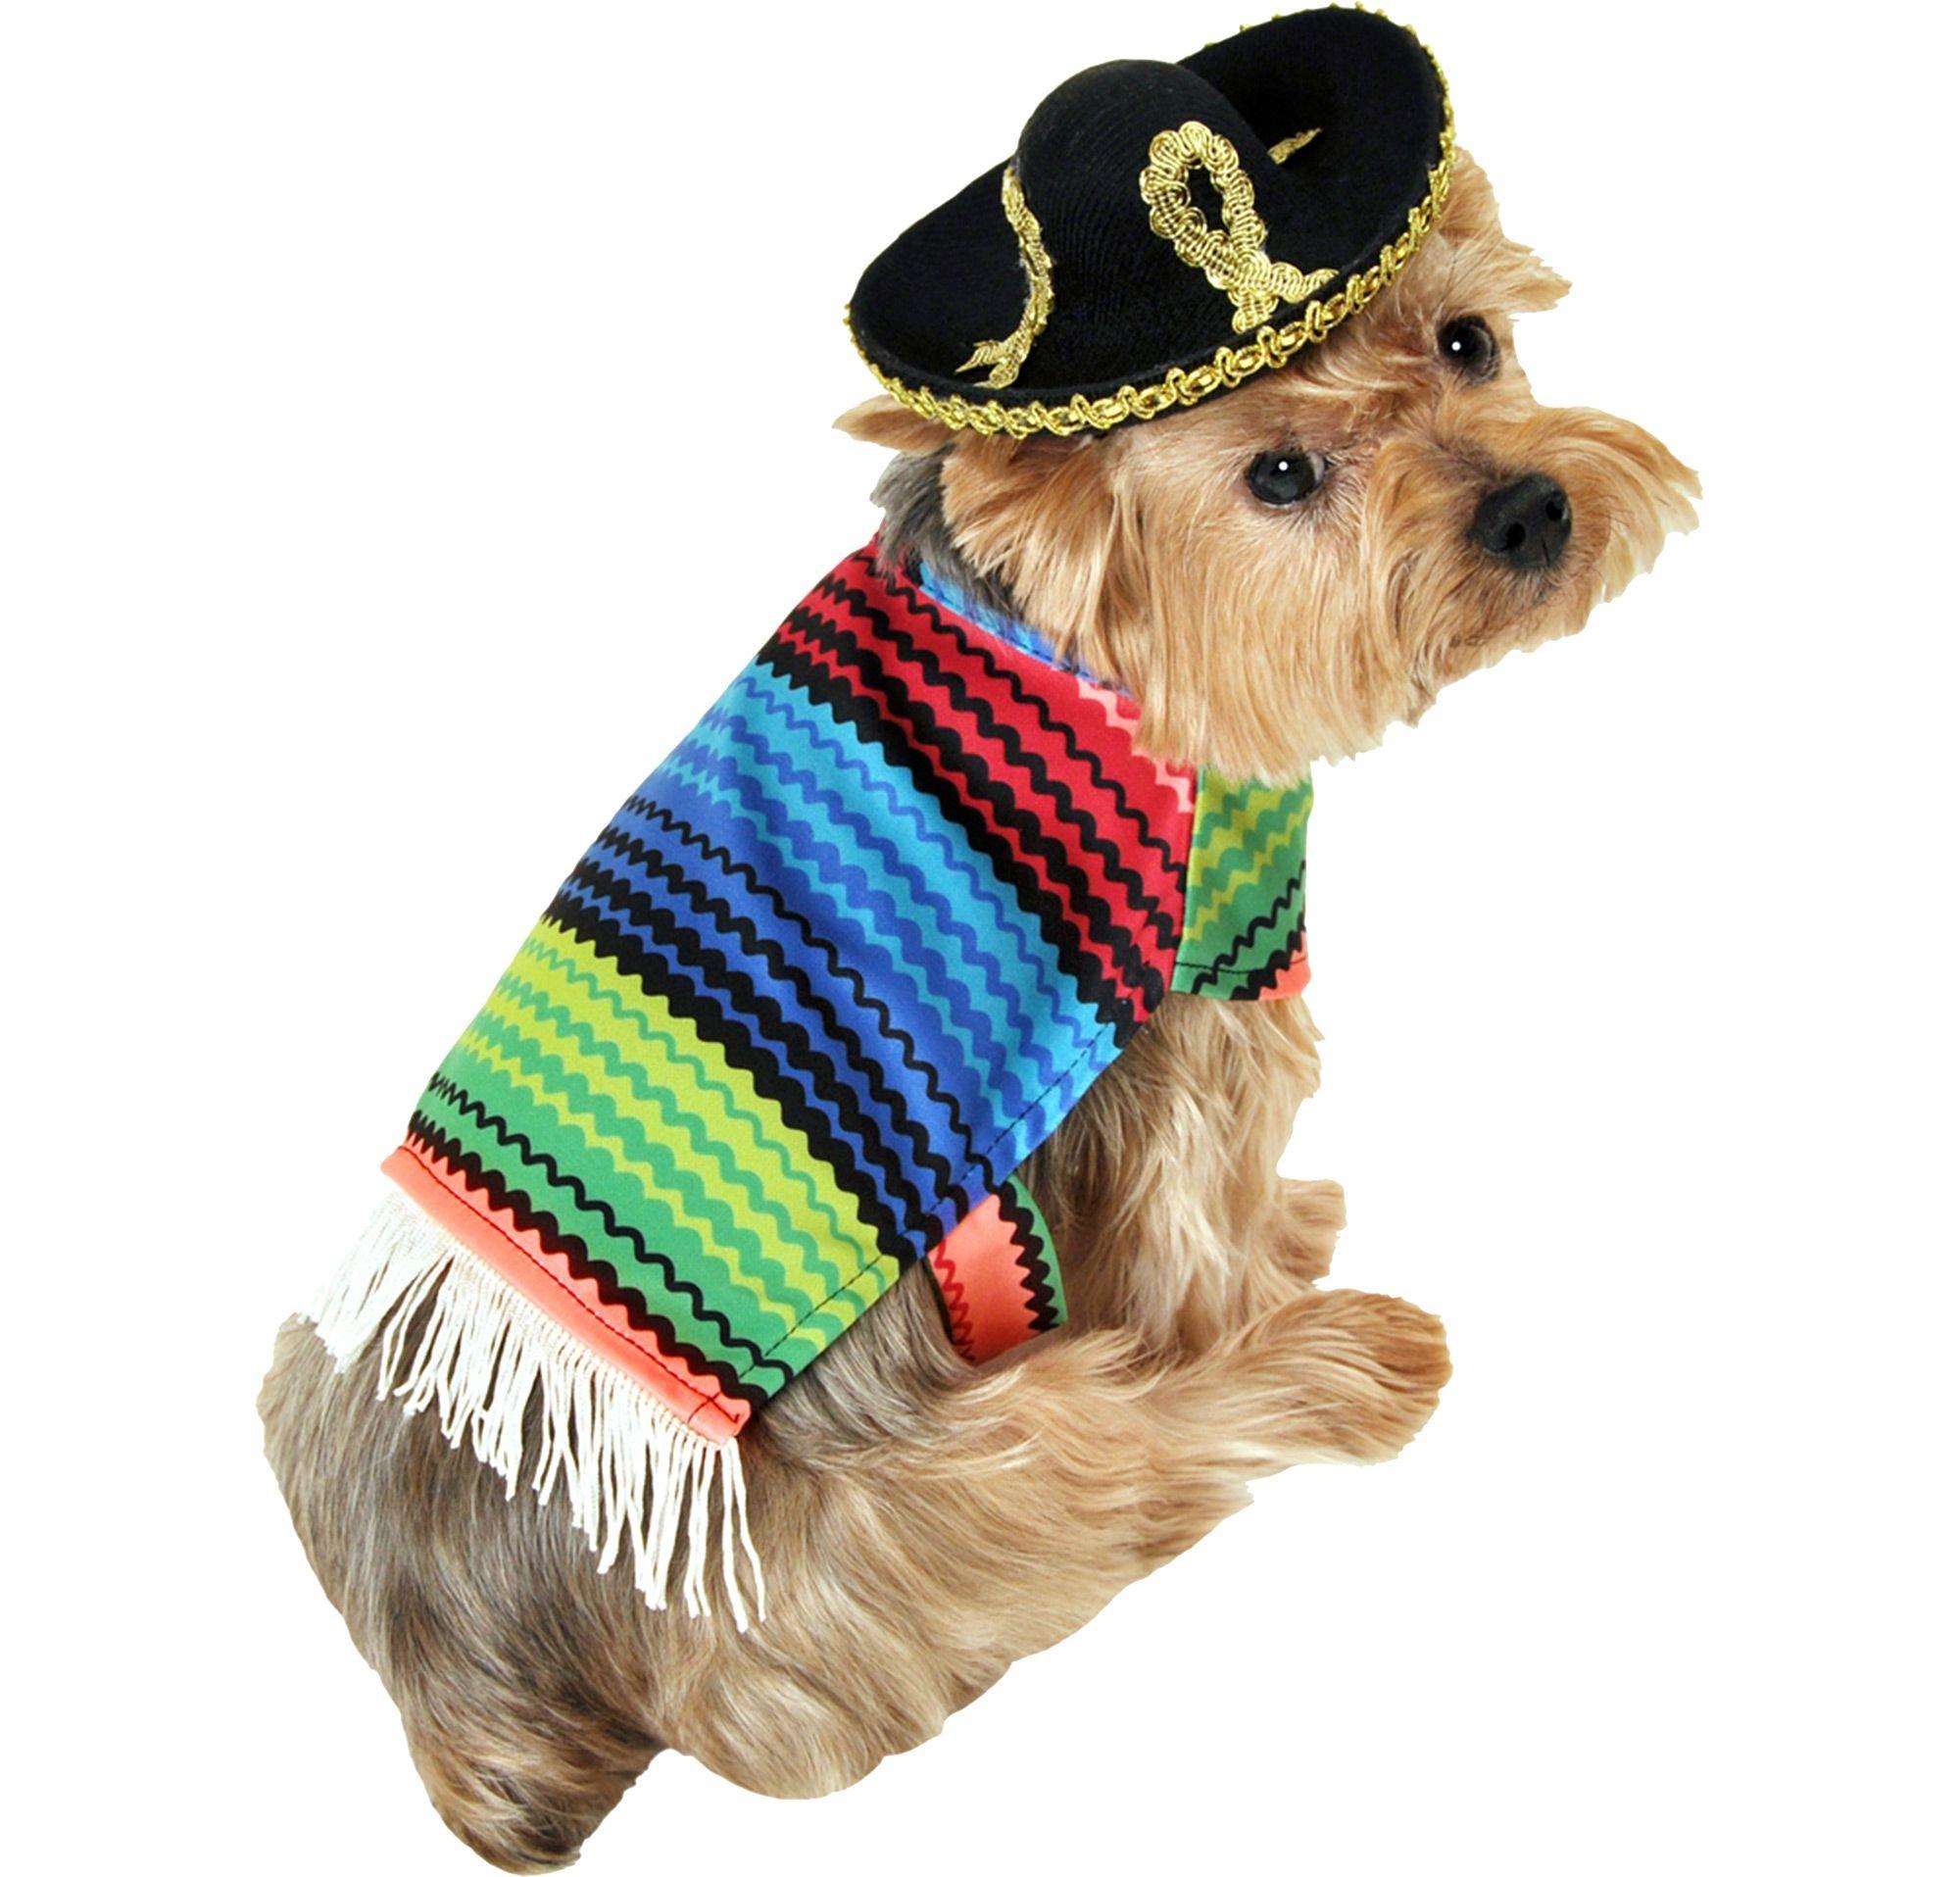 Amigo Dog Costume